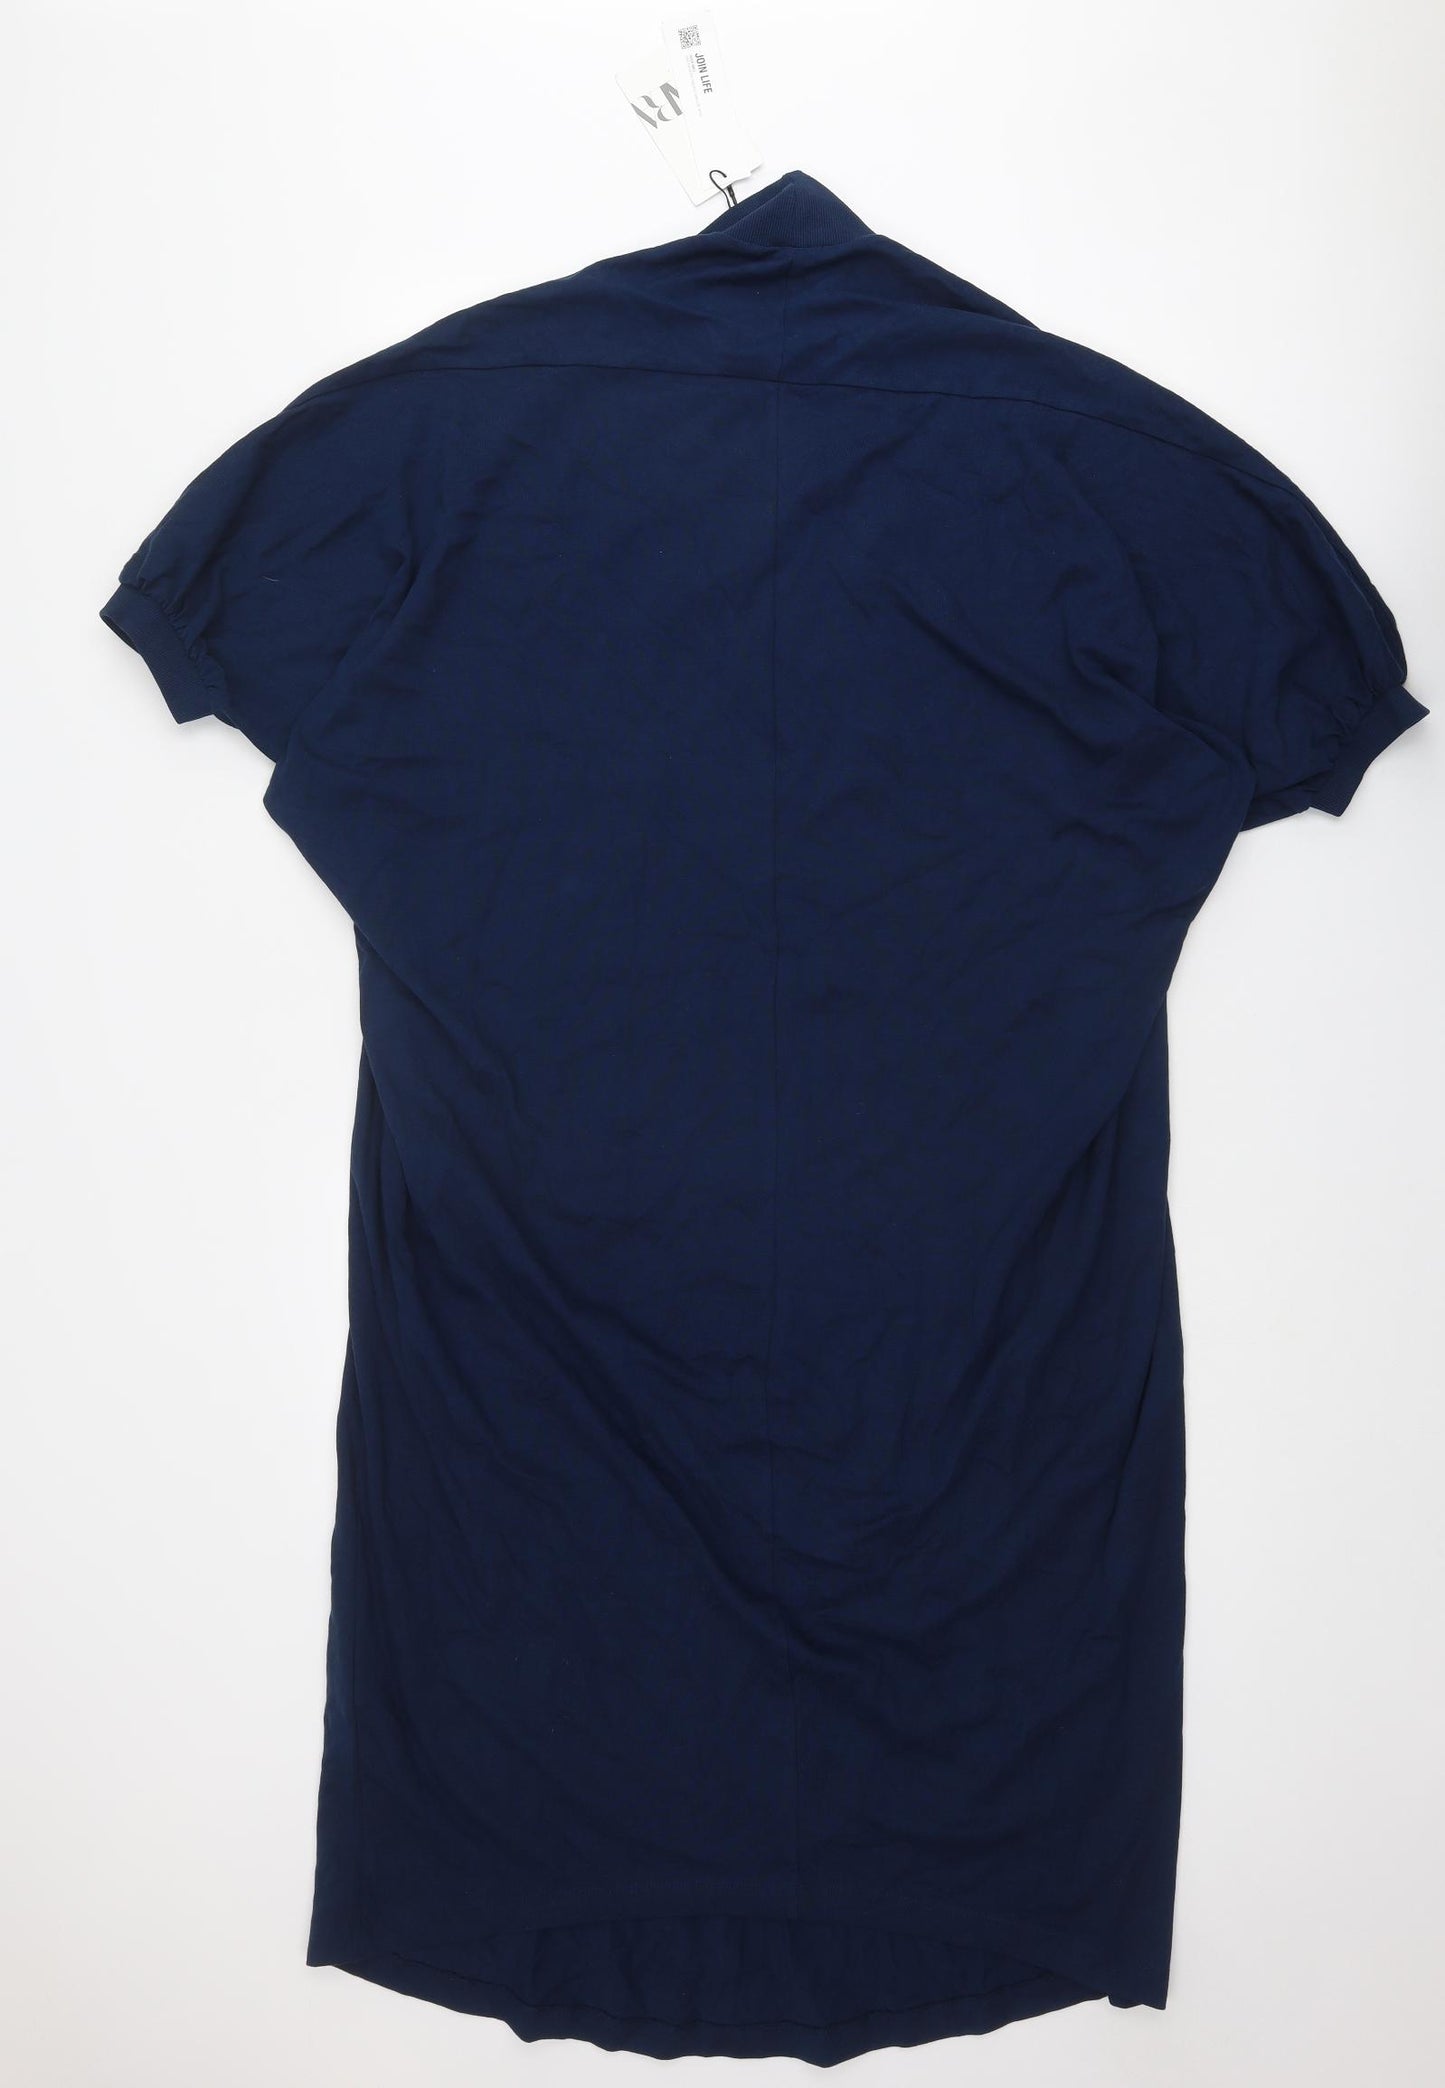 Zara Womens Blue Cotton T-Shirt Dress Size M High Neck Pullover